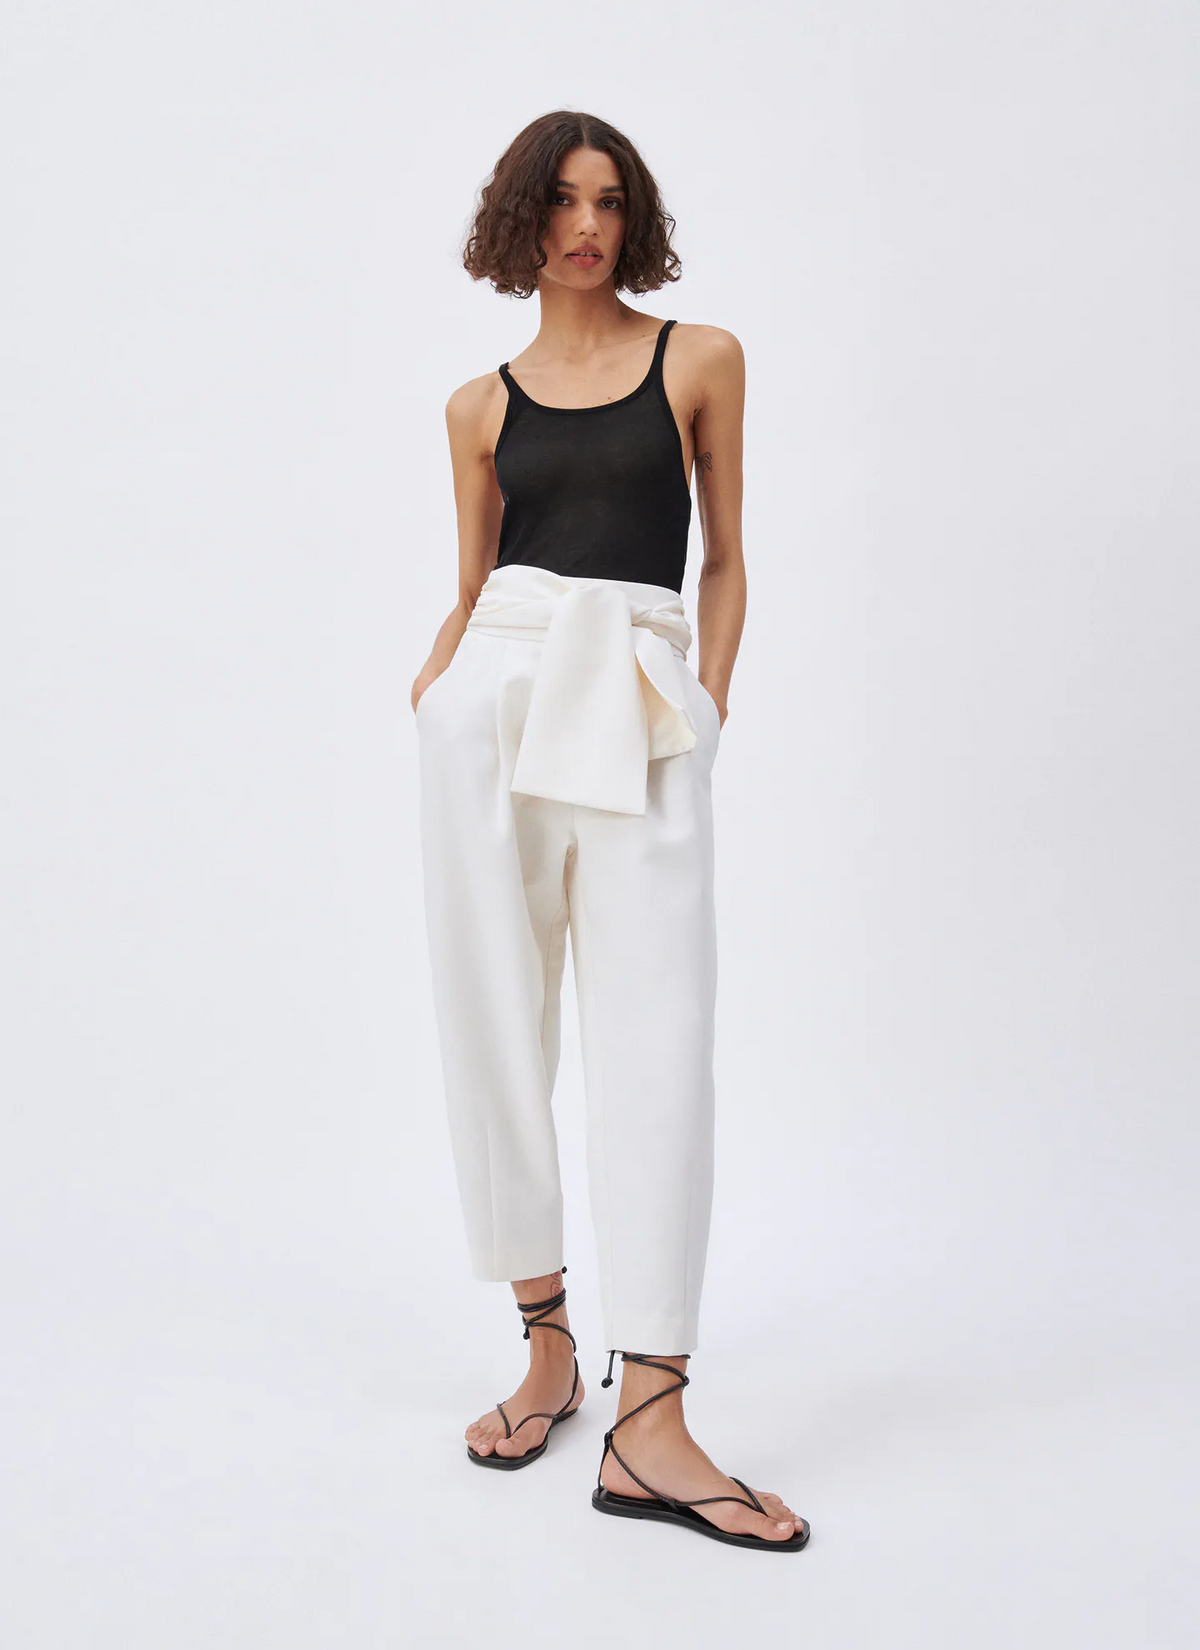 Estos son los pantalones blancos de Zara más y que han conquistado a las mujeres mayores de 50